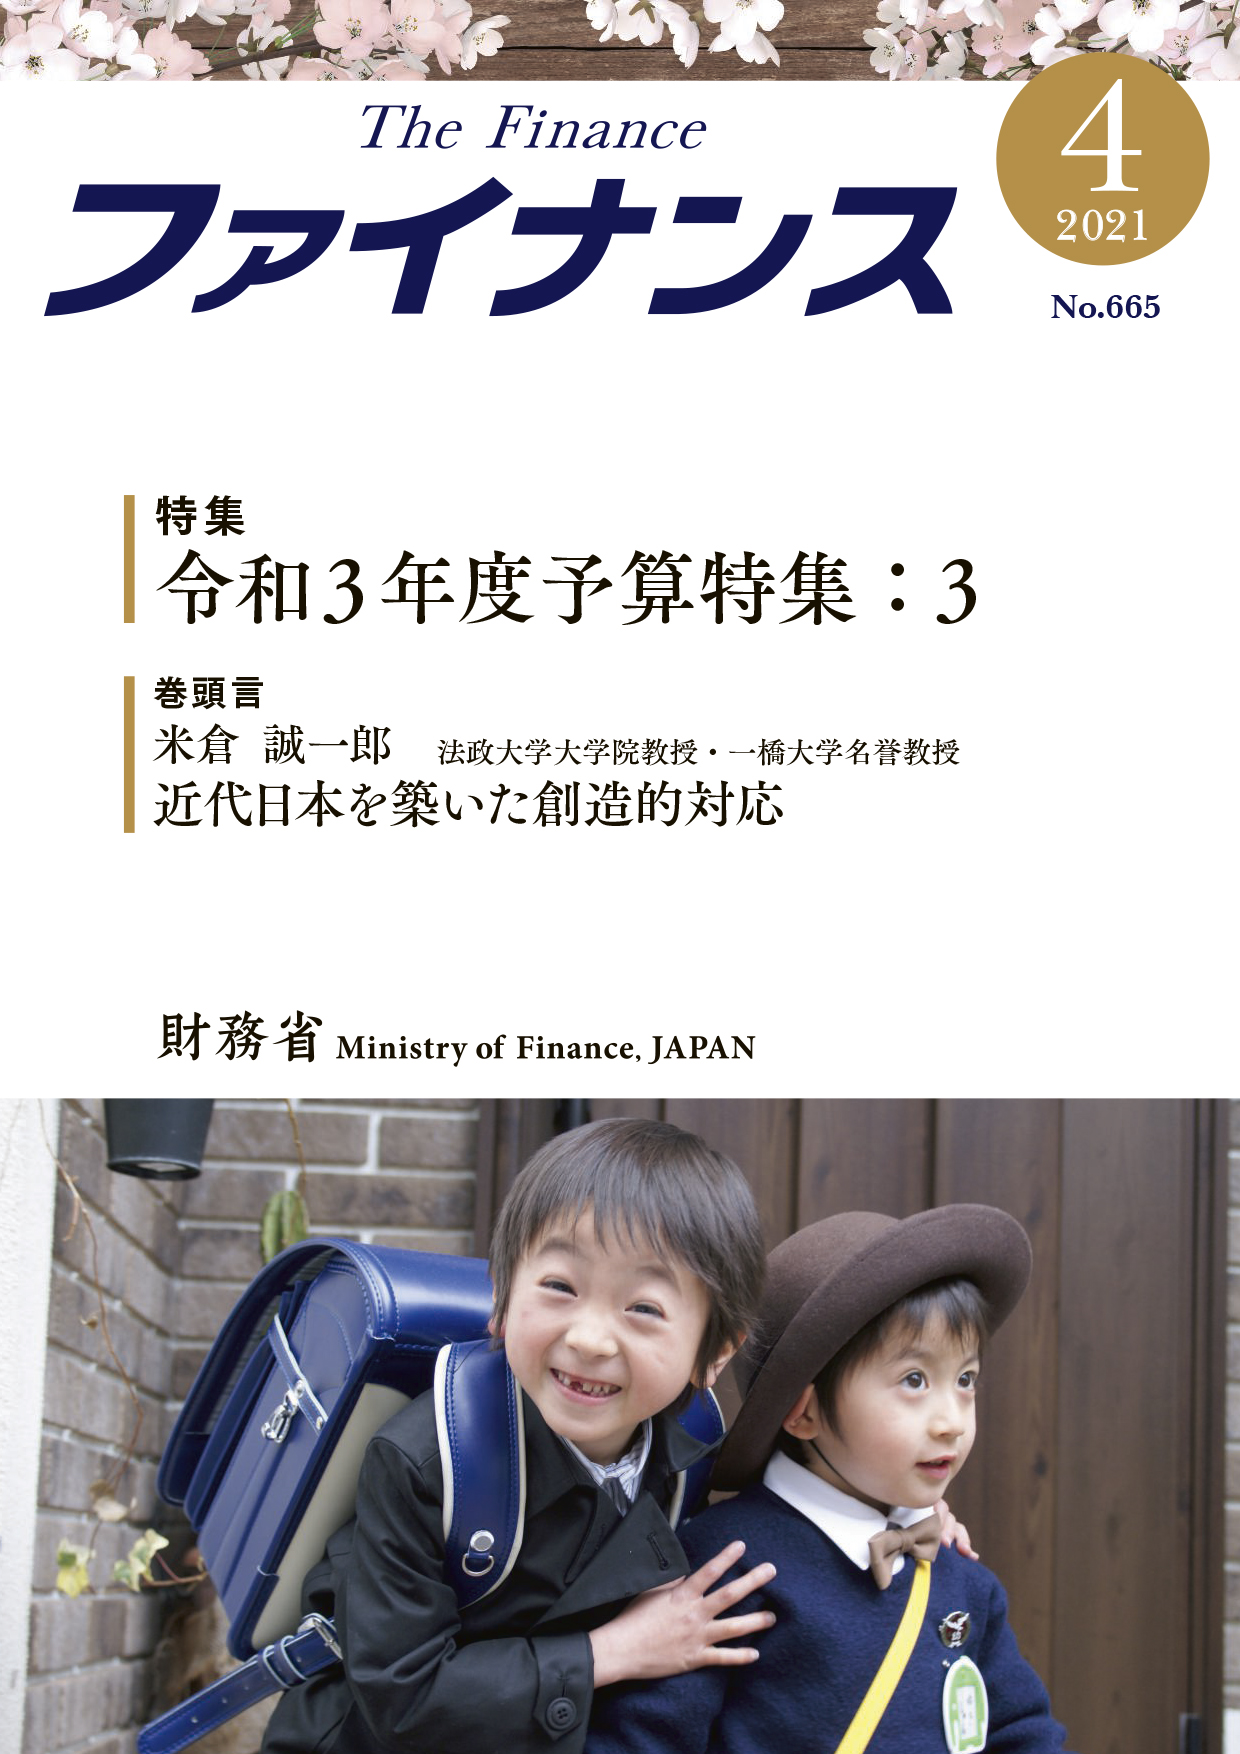 財務省広報誌「ファイナンス」令和3年4月号表紙写真「保育園入園式」